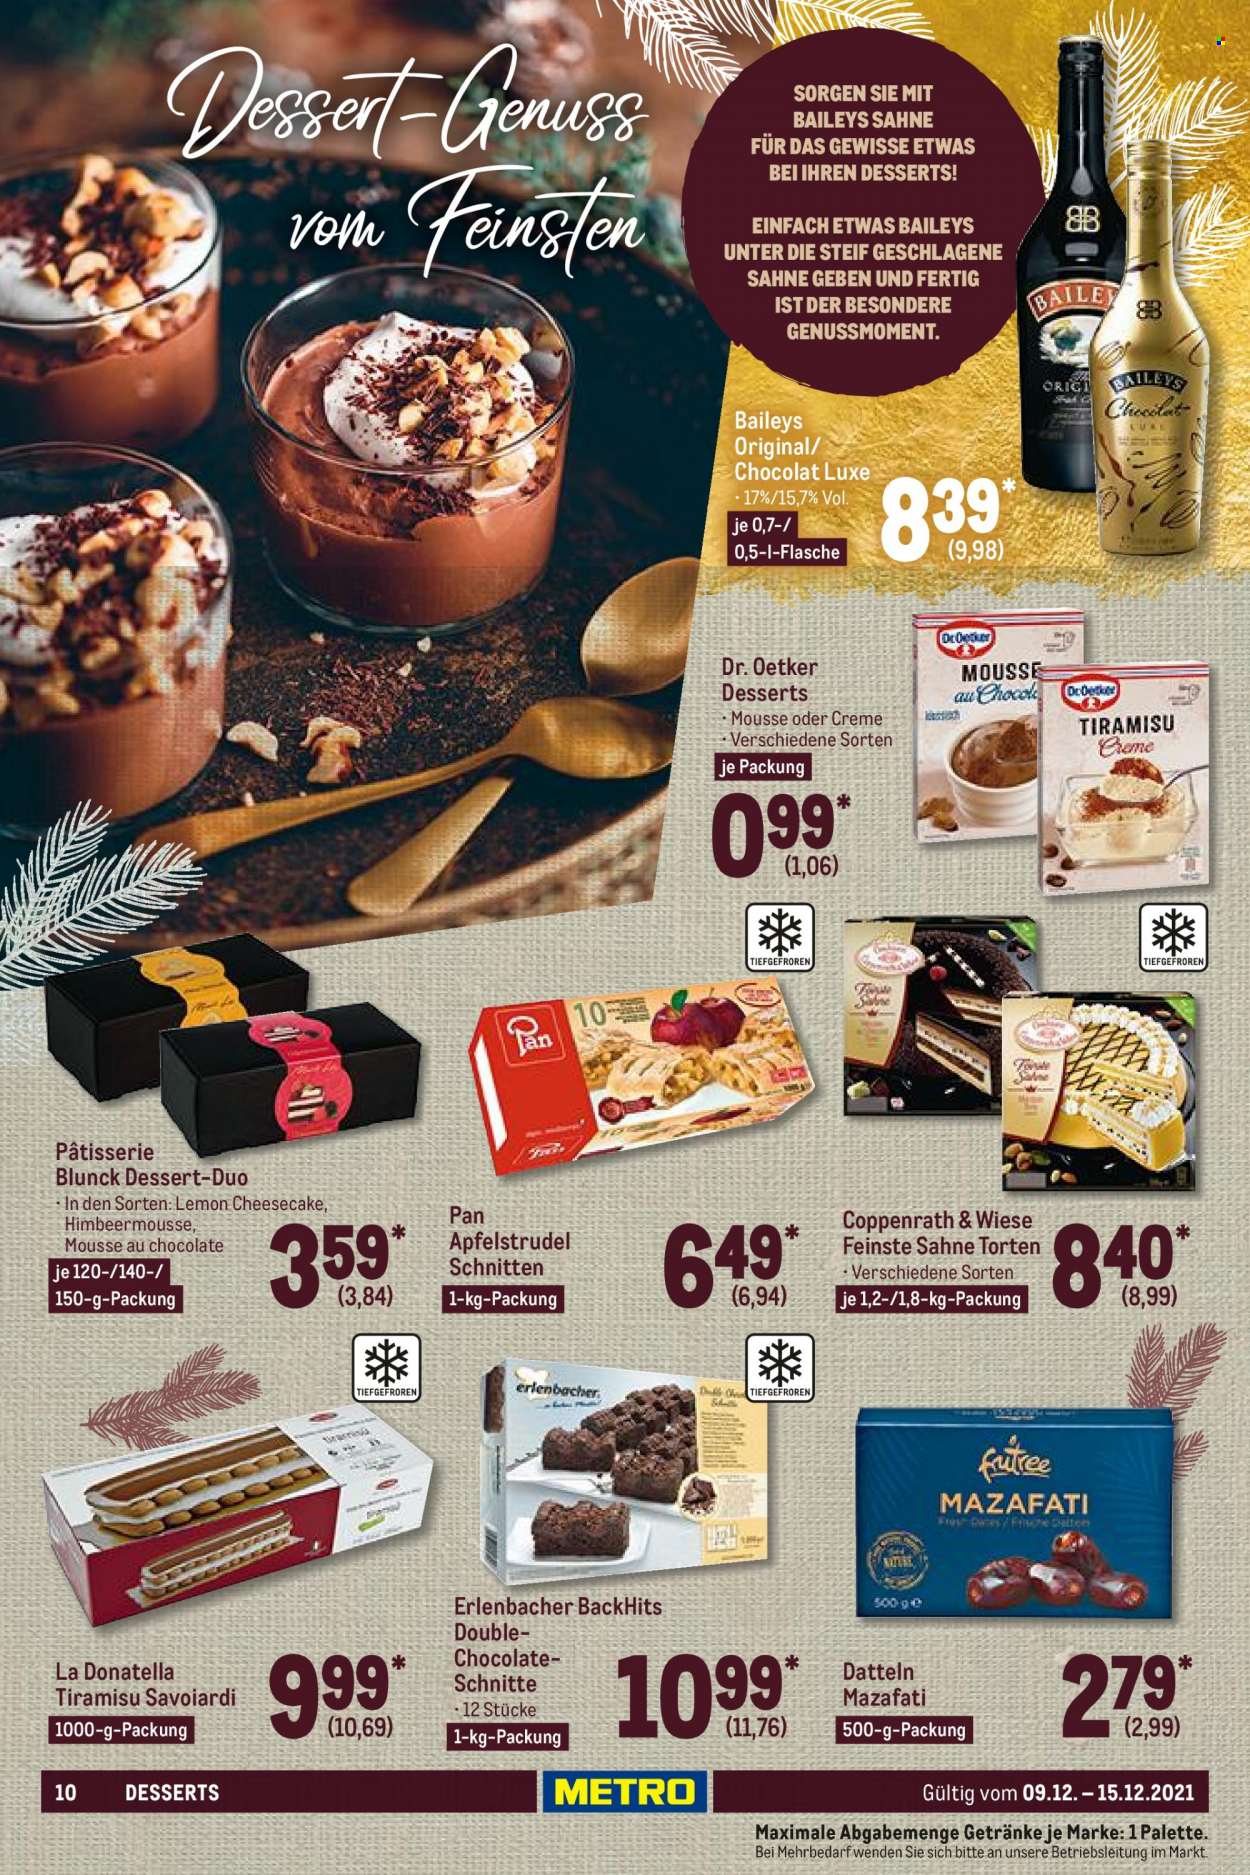 thumbnail - Prospekte Metro - 9.12.2021 - 15.12.2021 - Produkte in Aktion - Cheesecake, Italienisches Dessert, Strudel, Apfelstrudel, Dr. Oetker, Tiramisù, Coppenrath & Wiese, Baileys, Creme. Seite 10.